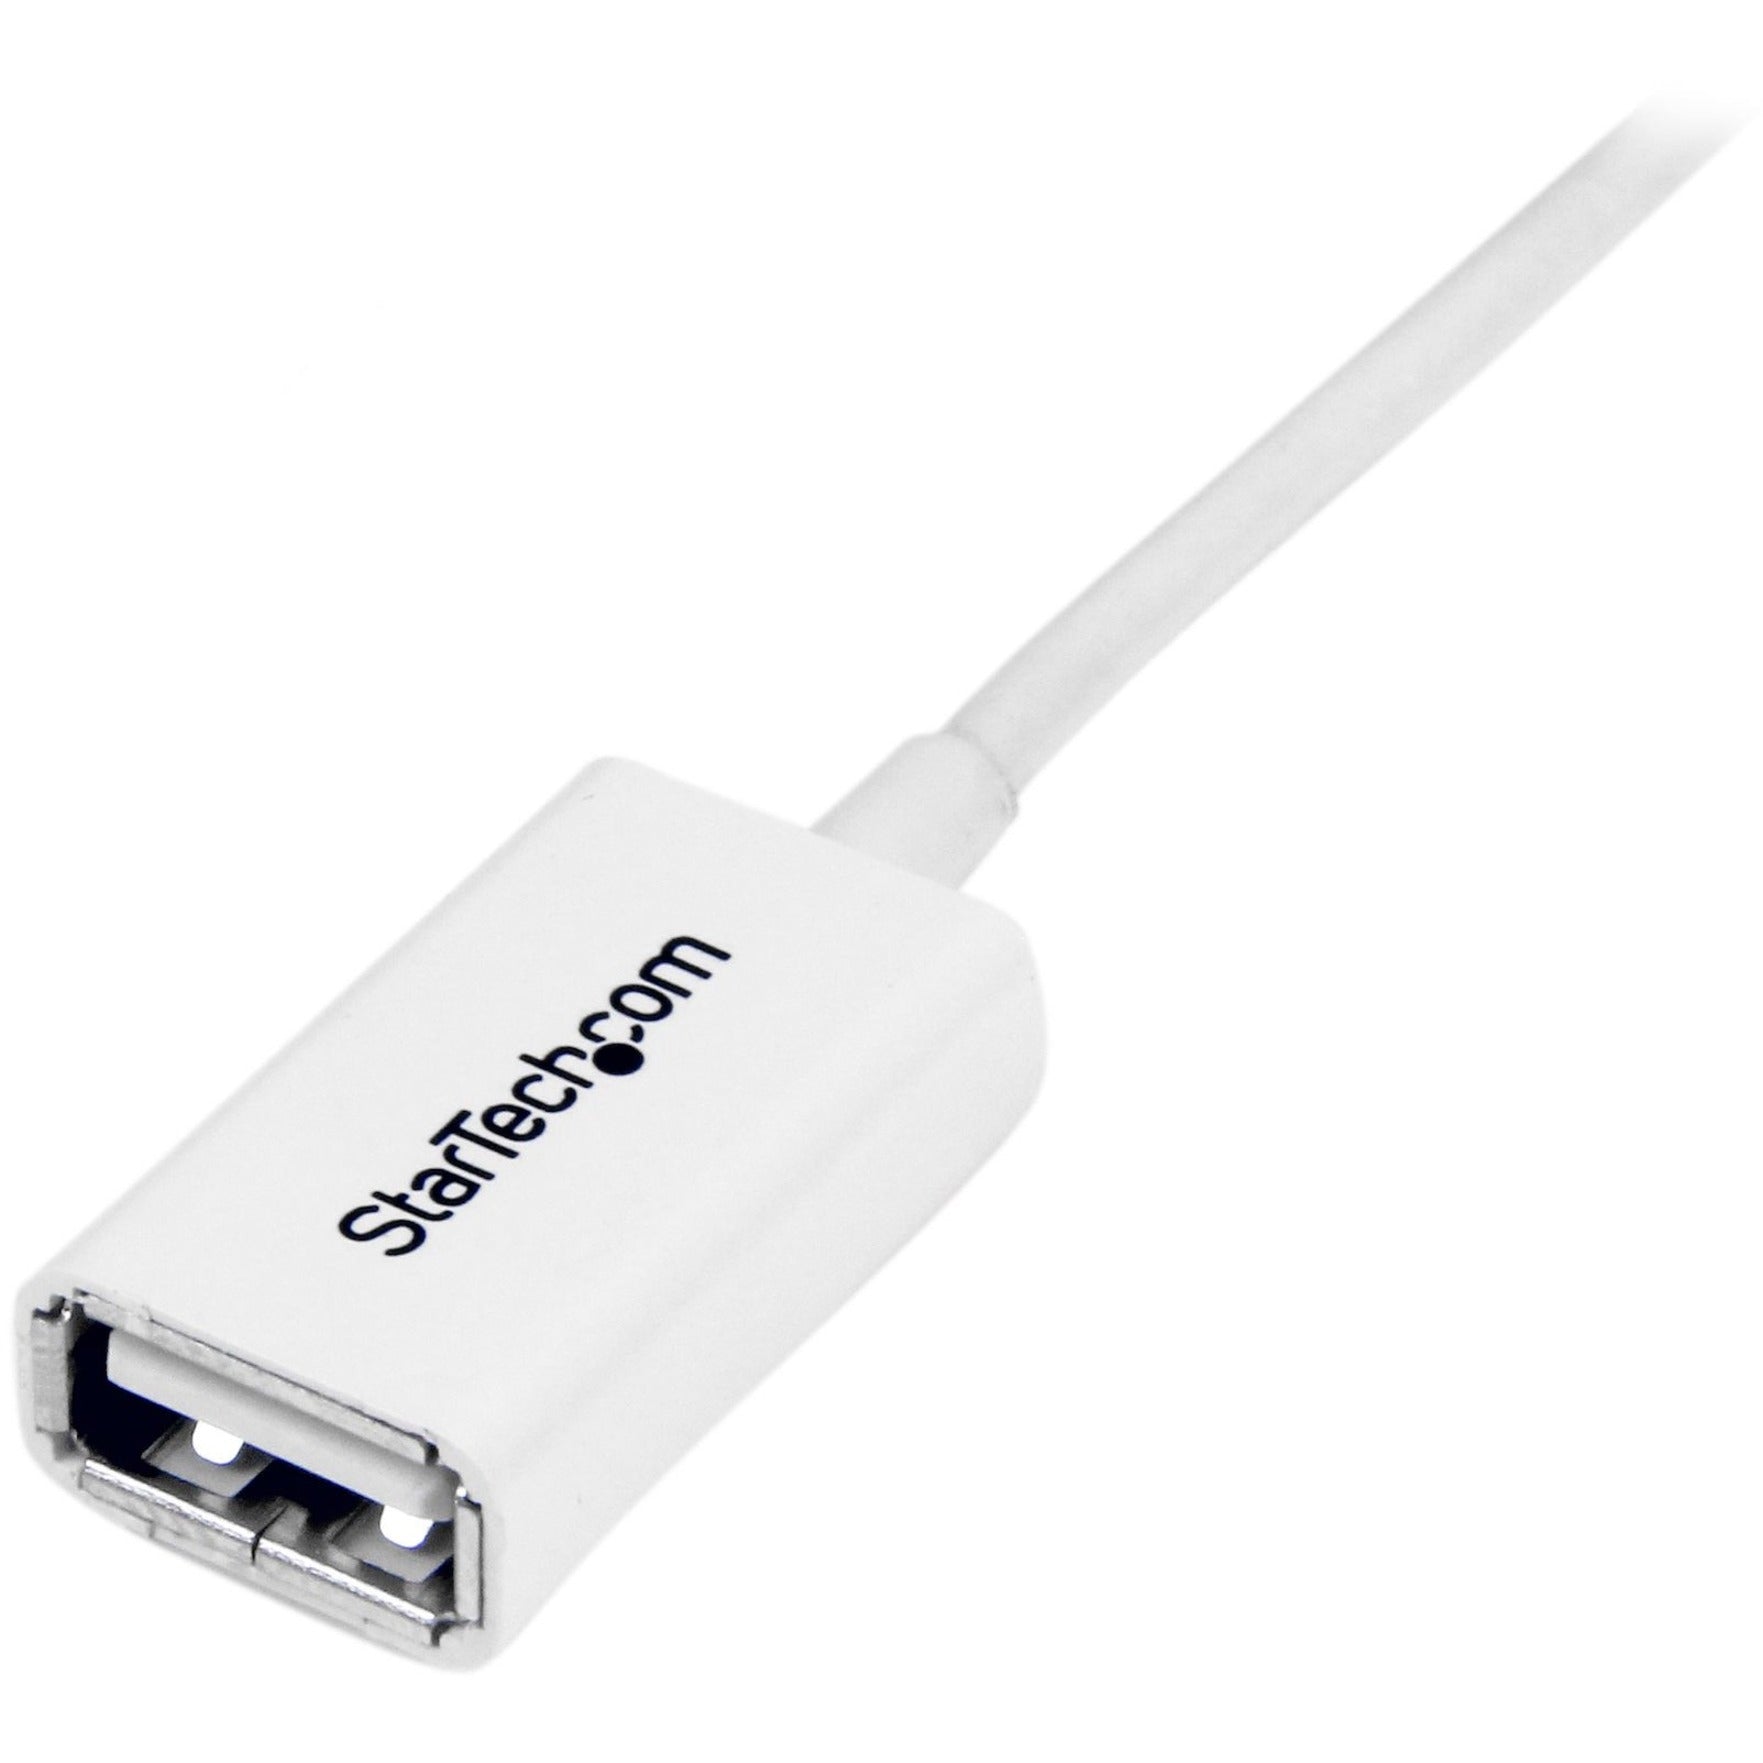 StarTech.com Cable de extensión USBEXTPAA3MW blanco de 3 m USB 2.0 A a A - M/H Moldeado Flexible Alivio de tensión Velocidad de transferencia de datos de 480 Mbit/s